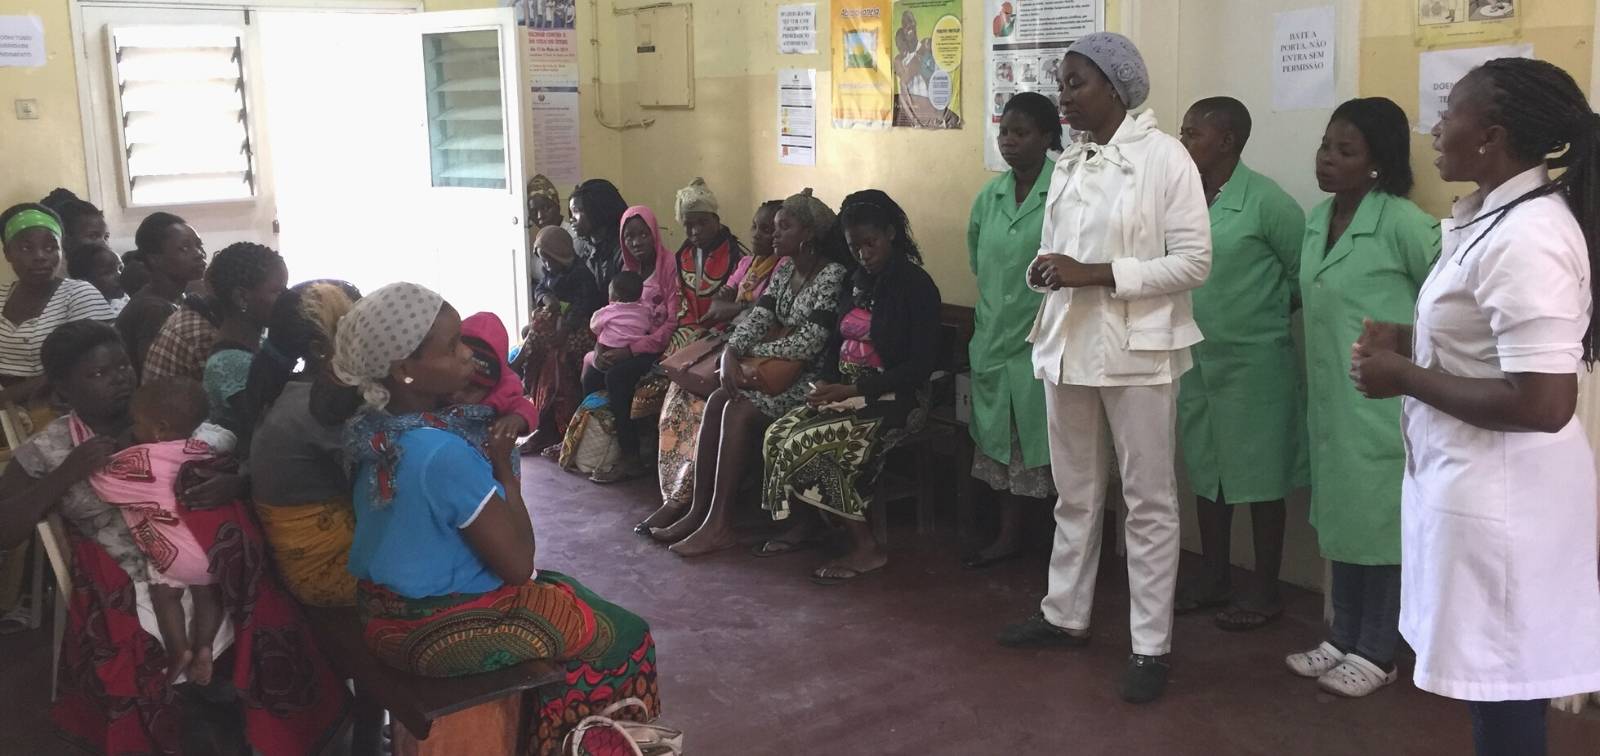 592 mujeres embarazadas han participado en el proyecto RESPIRE tras su reclutamiento en el sur de Mozambique.